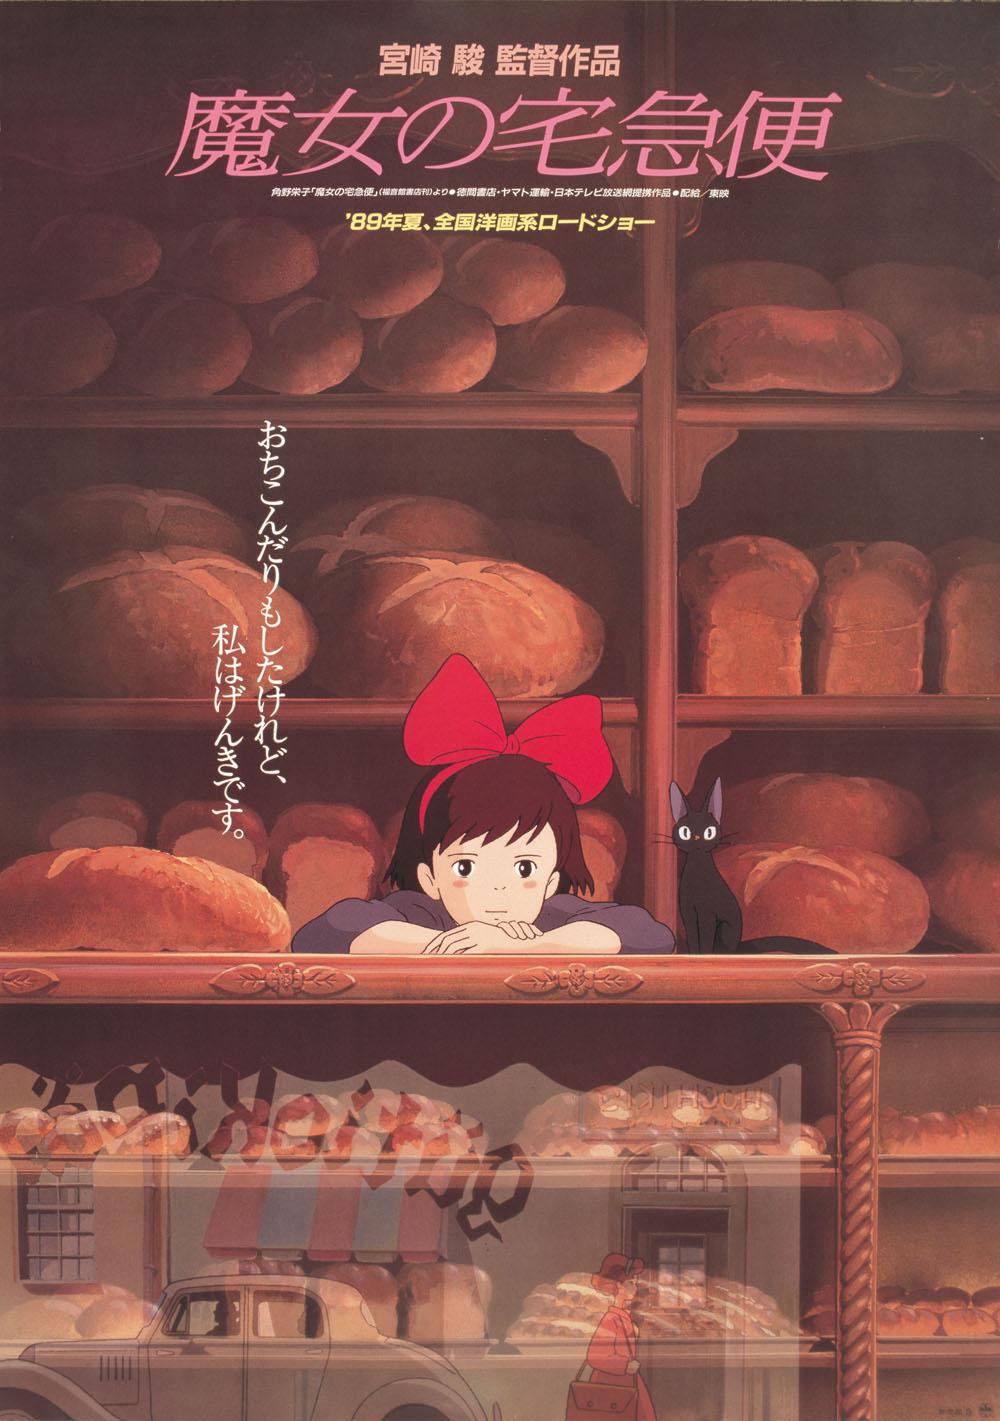 「魔女の宅急便」© 1989 角野栄子・Studio Ghibli・N